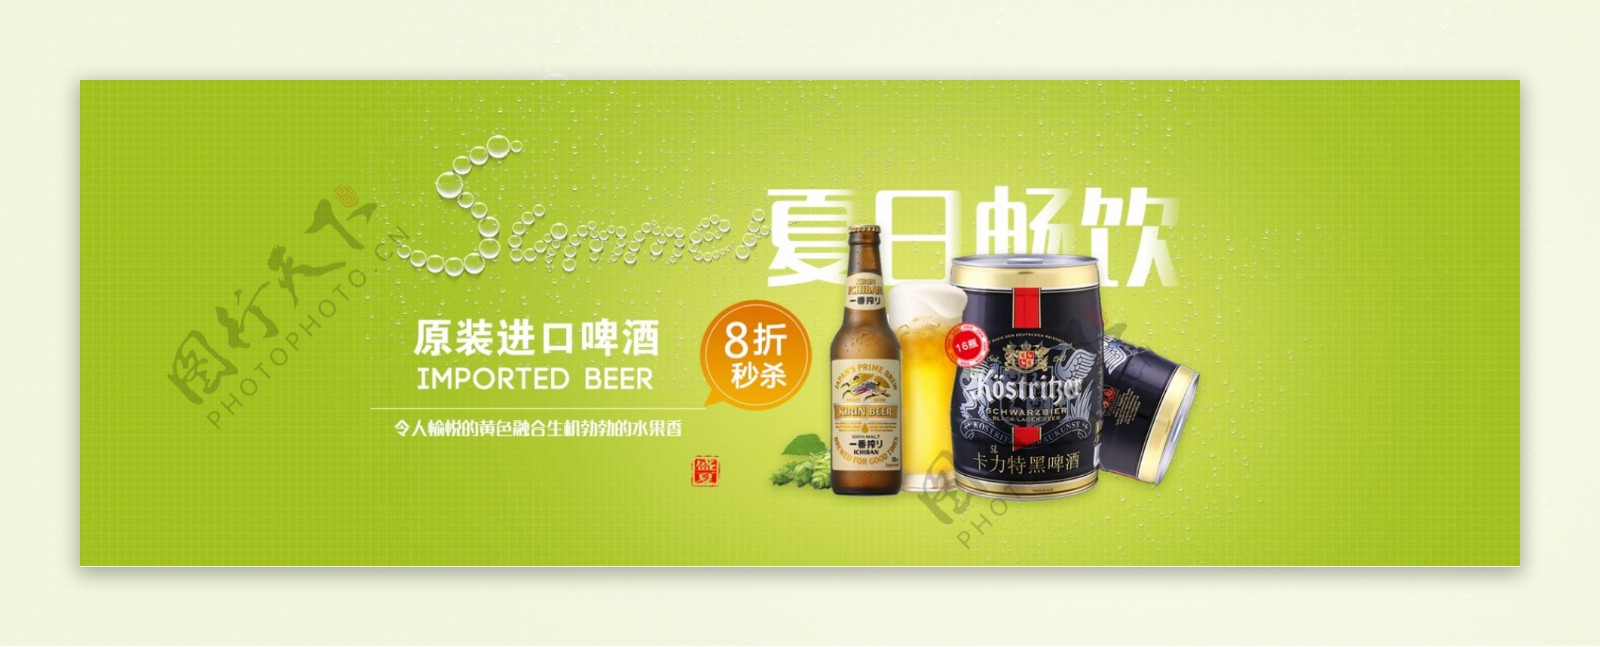 电商夏日特惠酒品促销啤酒海报